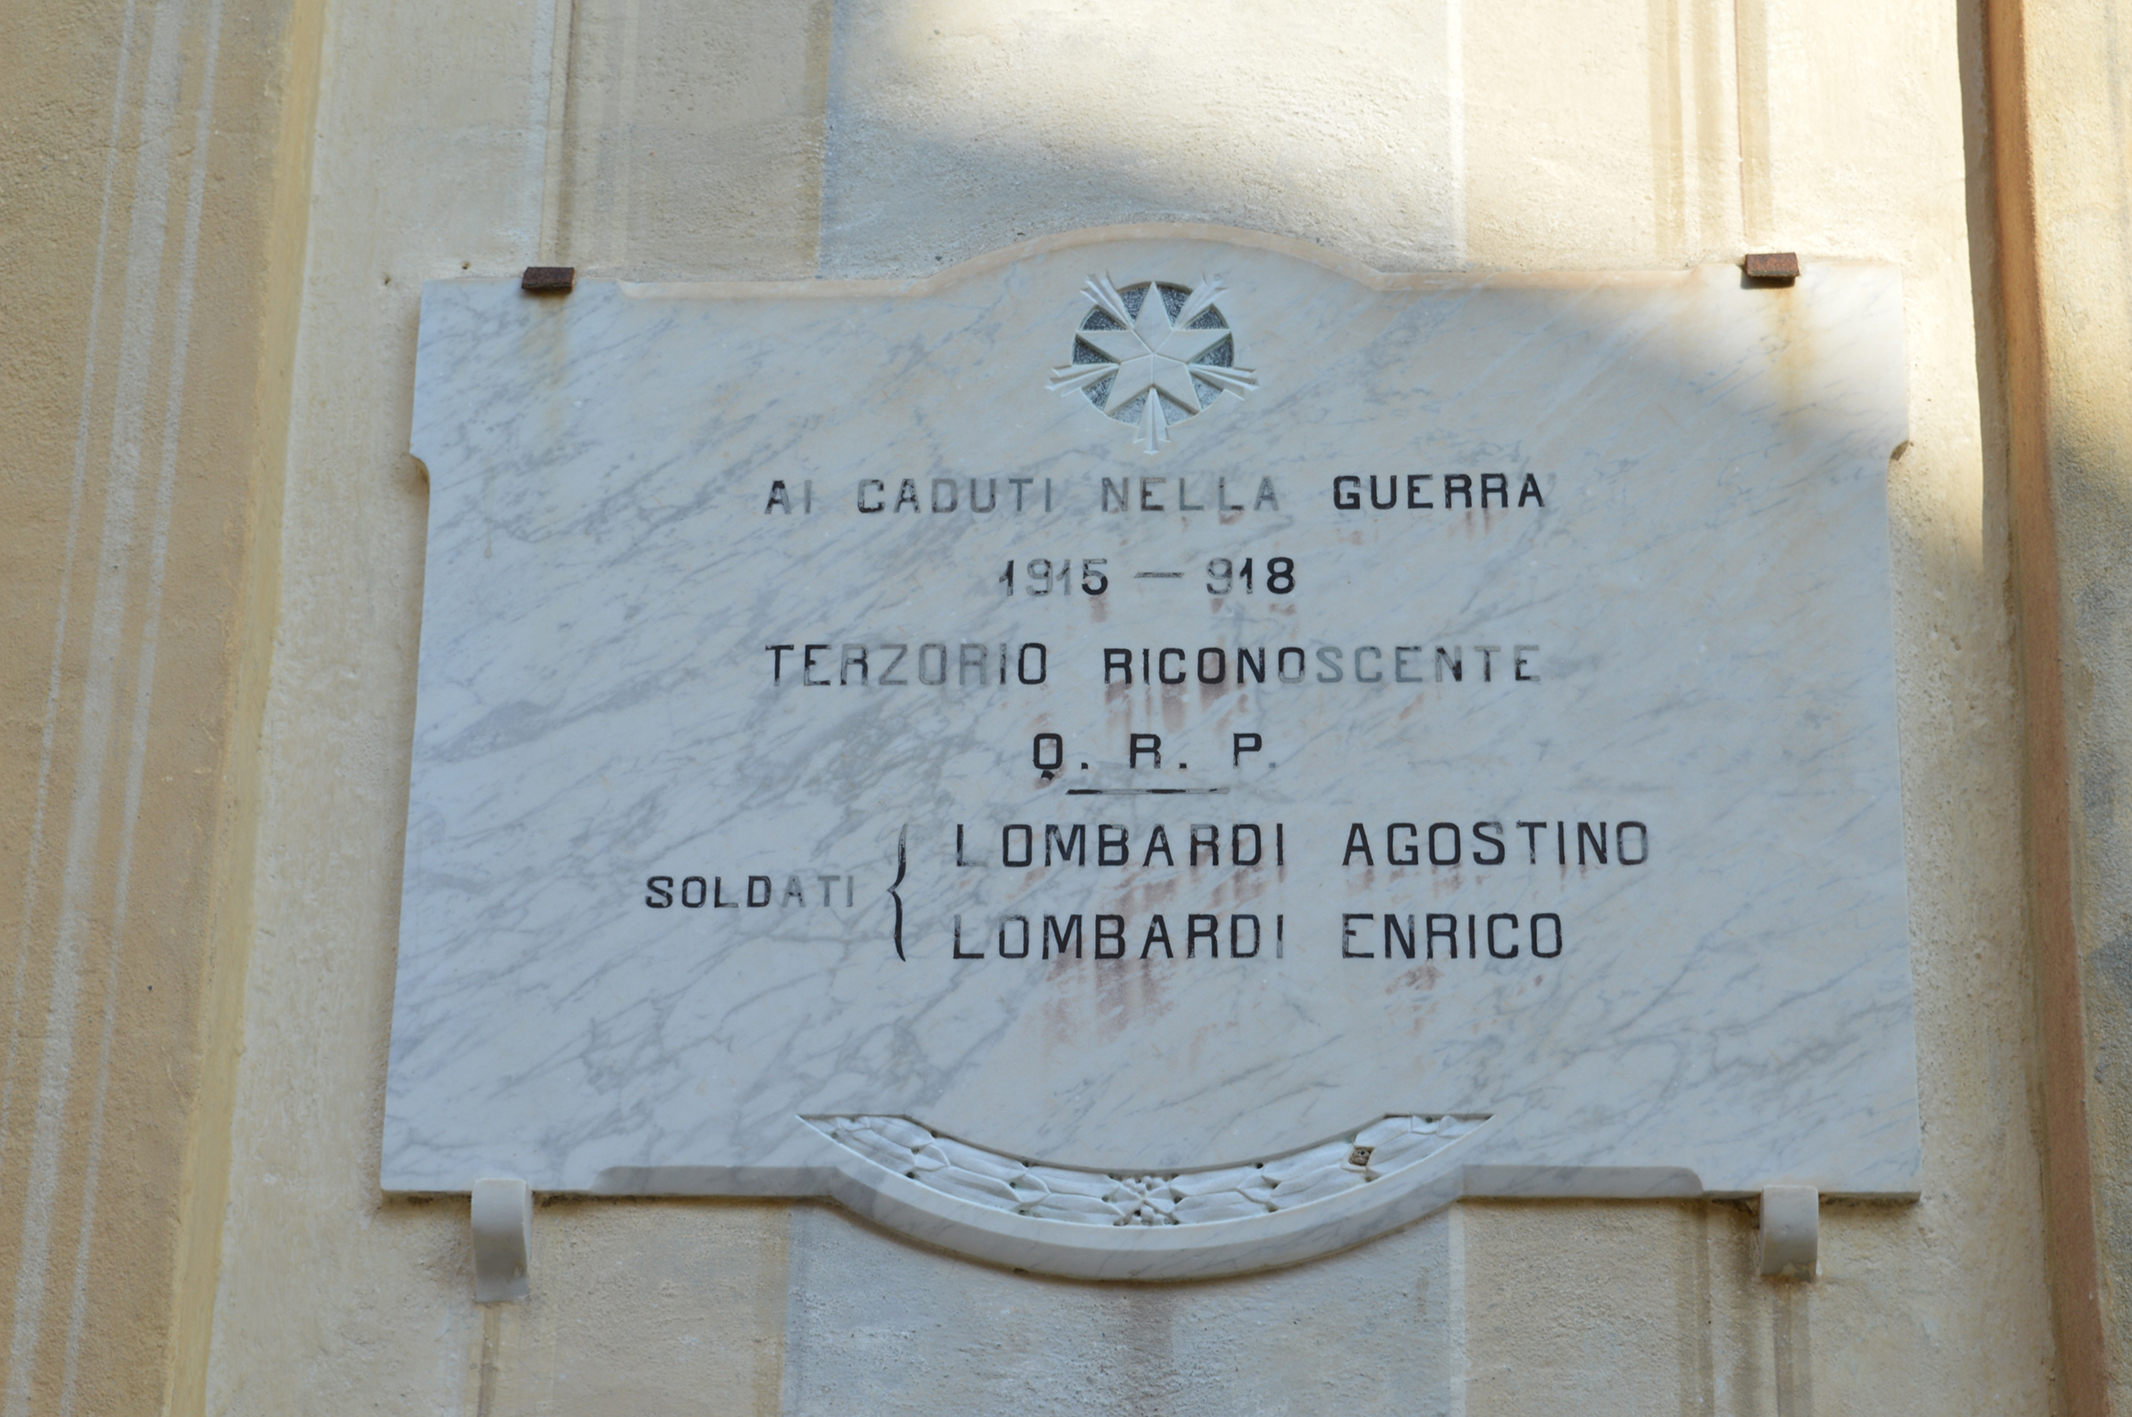 alloro(ghirlanda), stella d'Italia (simbologia Patria) (lapide commemorativa ai caduti) - ambito ligure (prima metà XX)